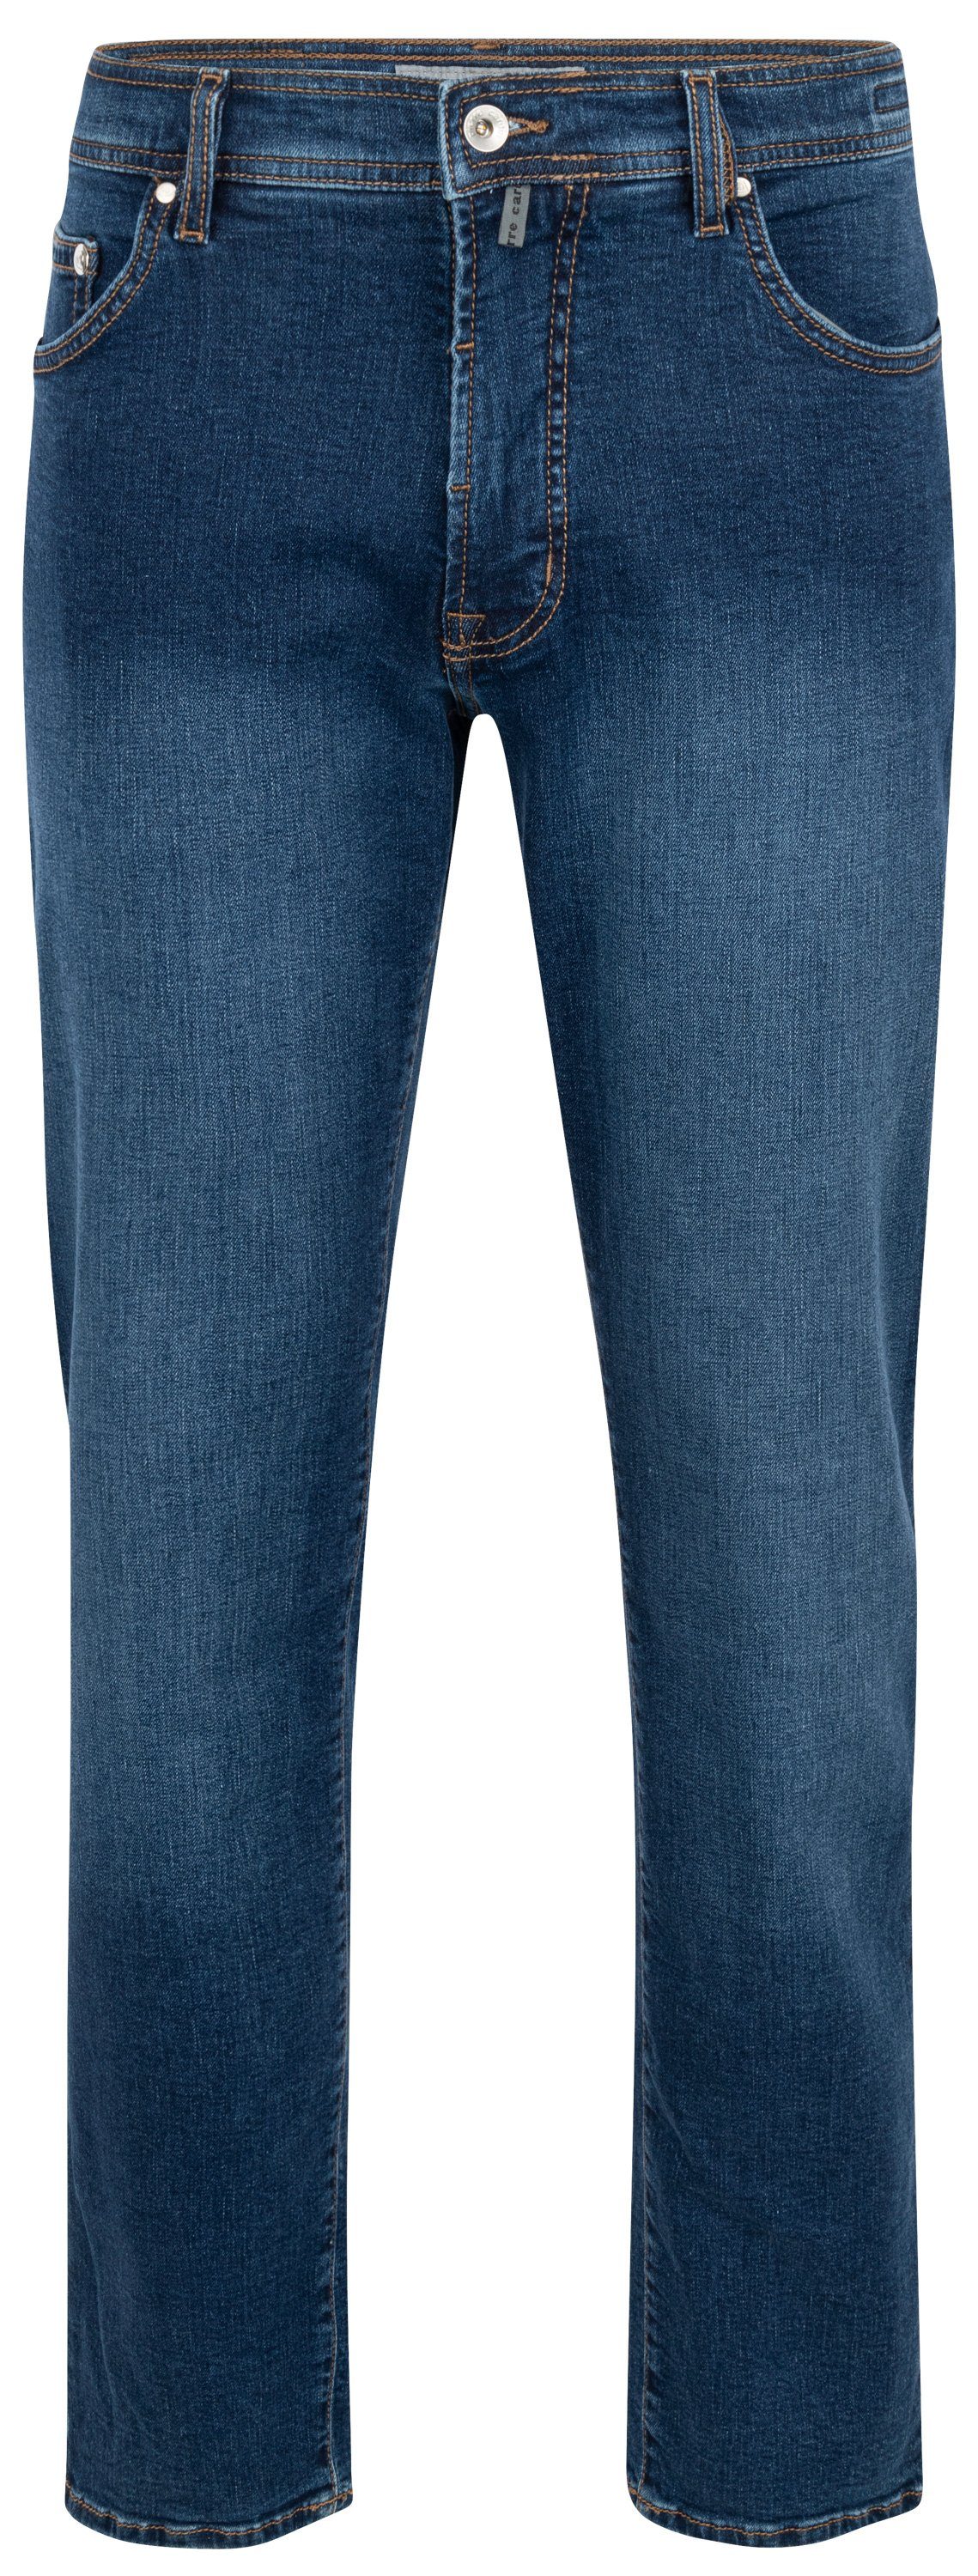 5-Pocket-Jeans CARDIN PIERRE DEAUVILLE blue Cardin buffies Pierre used 31960 7106.6824